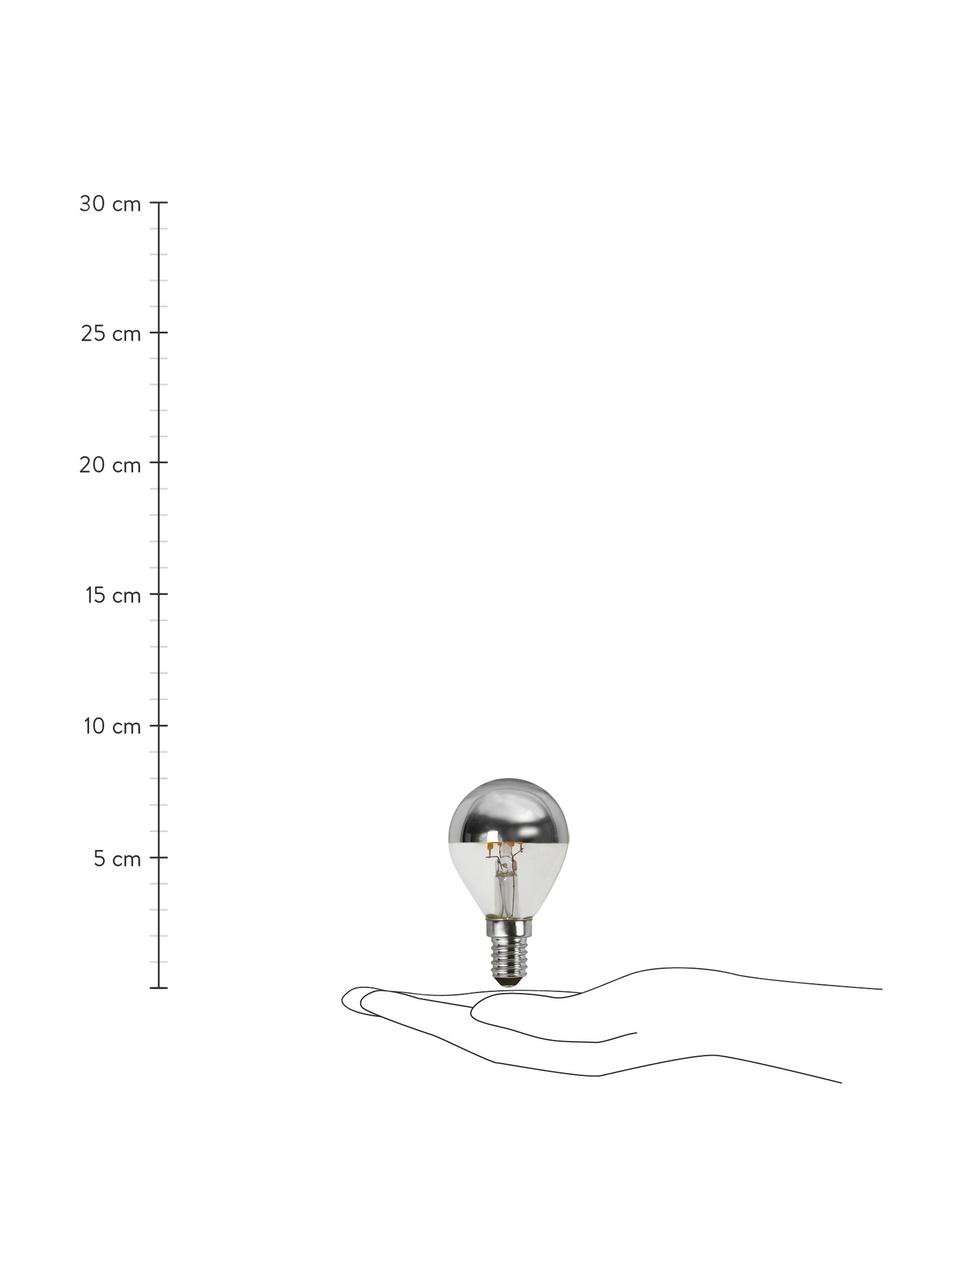 Ampoule (E14 - 250 lm), blanc chaud, intensité variable, 1 pièce, Argenté, transparent